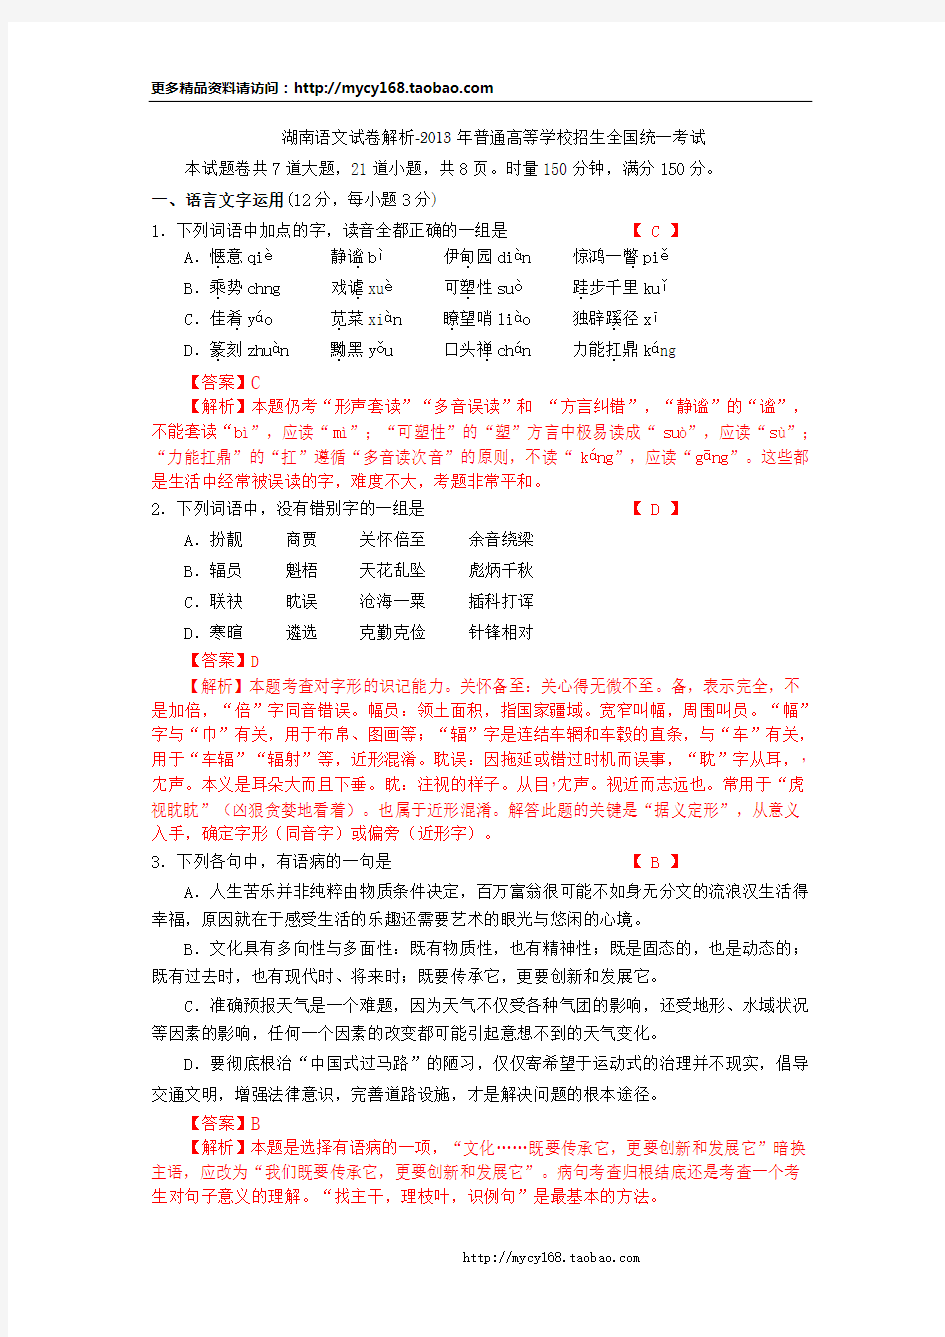 2013年高考真题 湖南 语文(详解版)